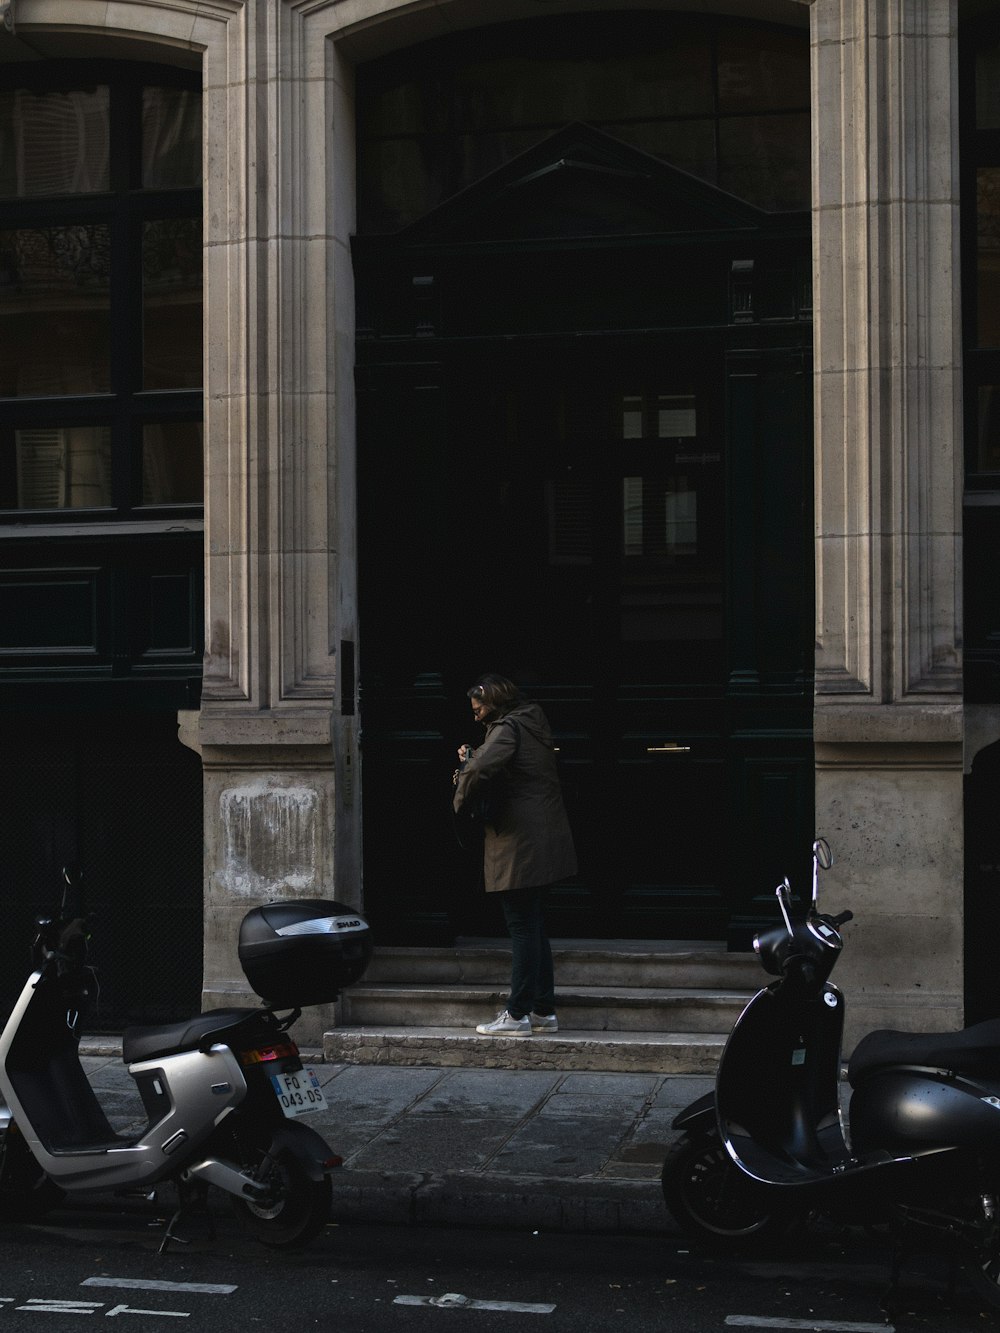 スクーターの隣の建物の前に立つ男